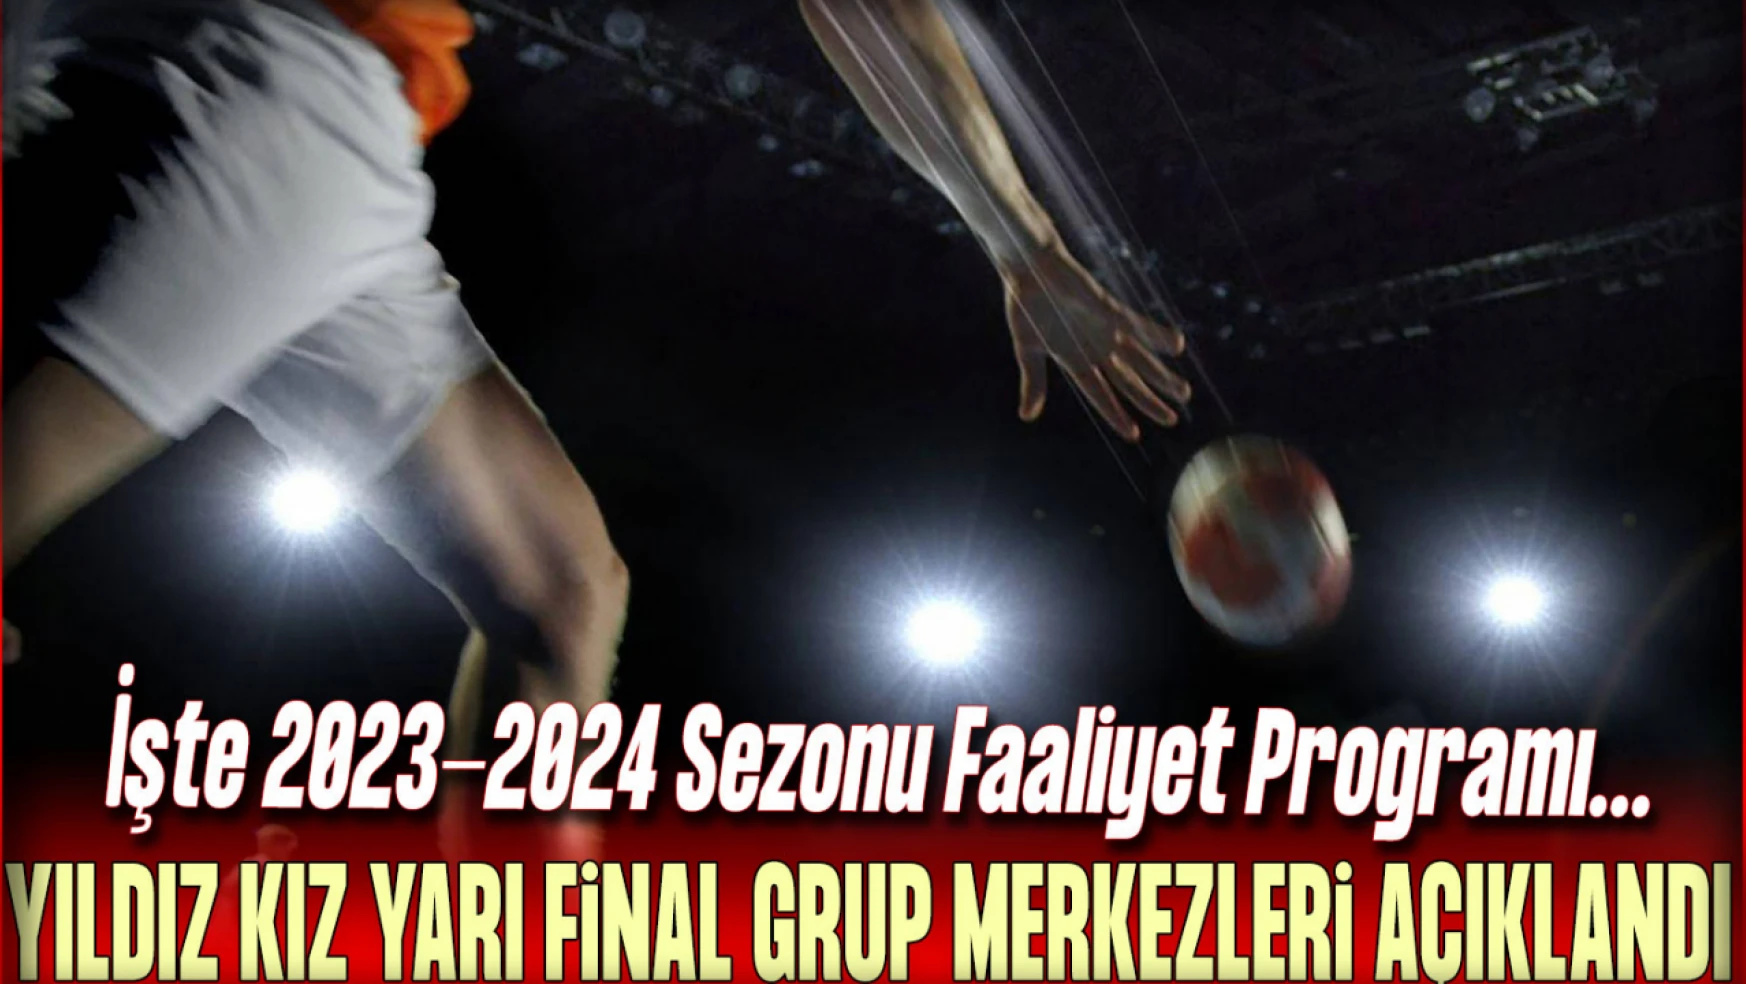 Yıldız Kız Yarı Final Grup Merkezleri Açıklandı: İşte 2023-2024 Sezonu Faaliyet Programı...